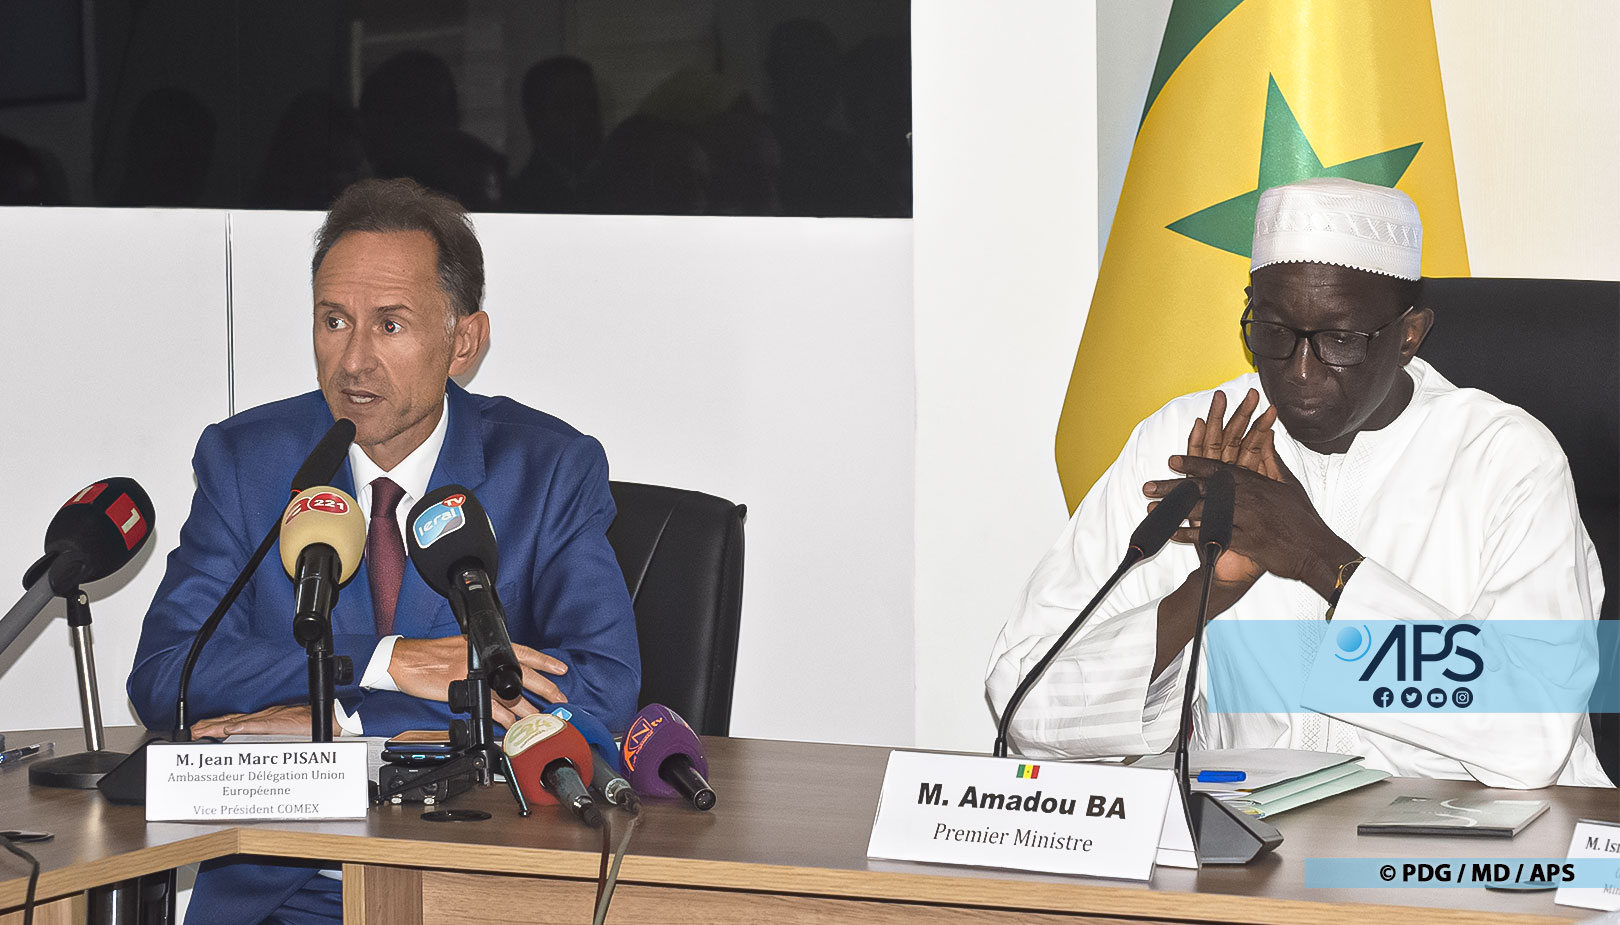 Les partenaires financiers du Sénégal appellent à « la stabilité et la démocratie »